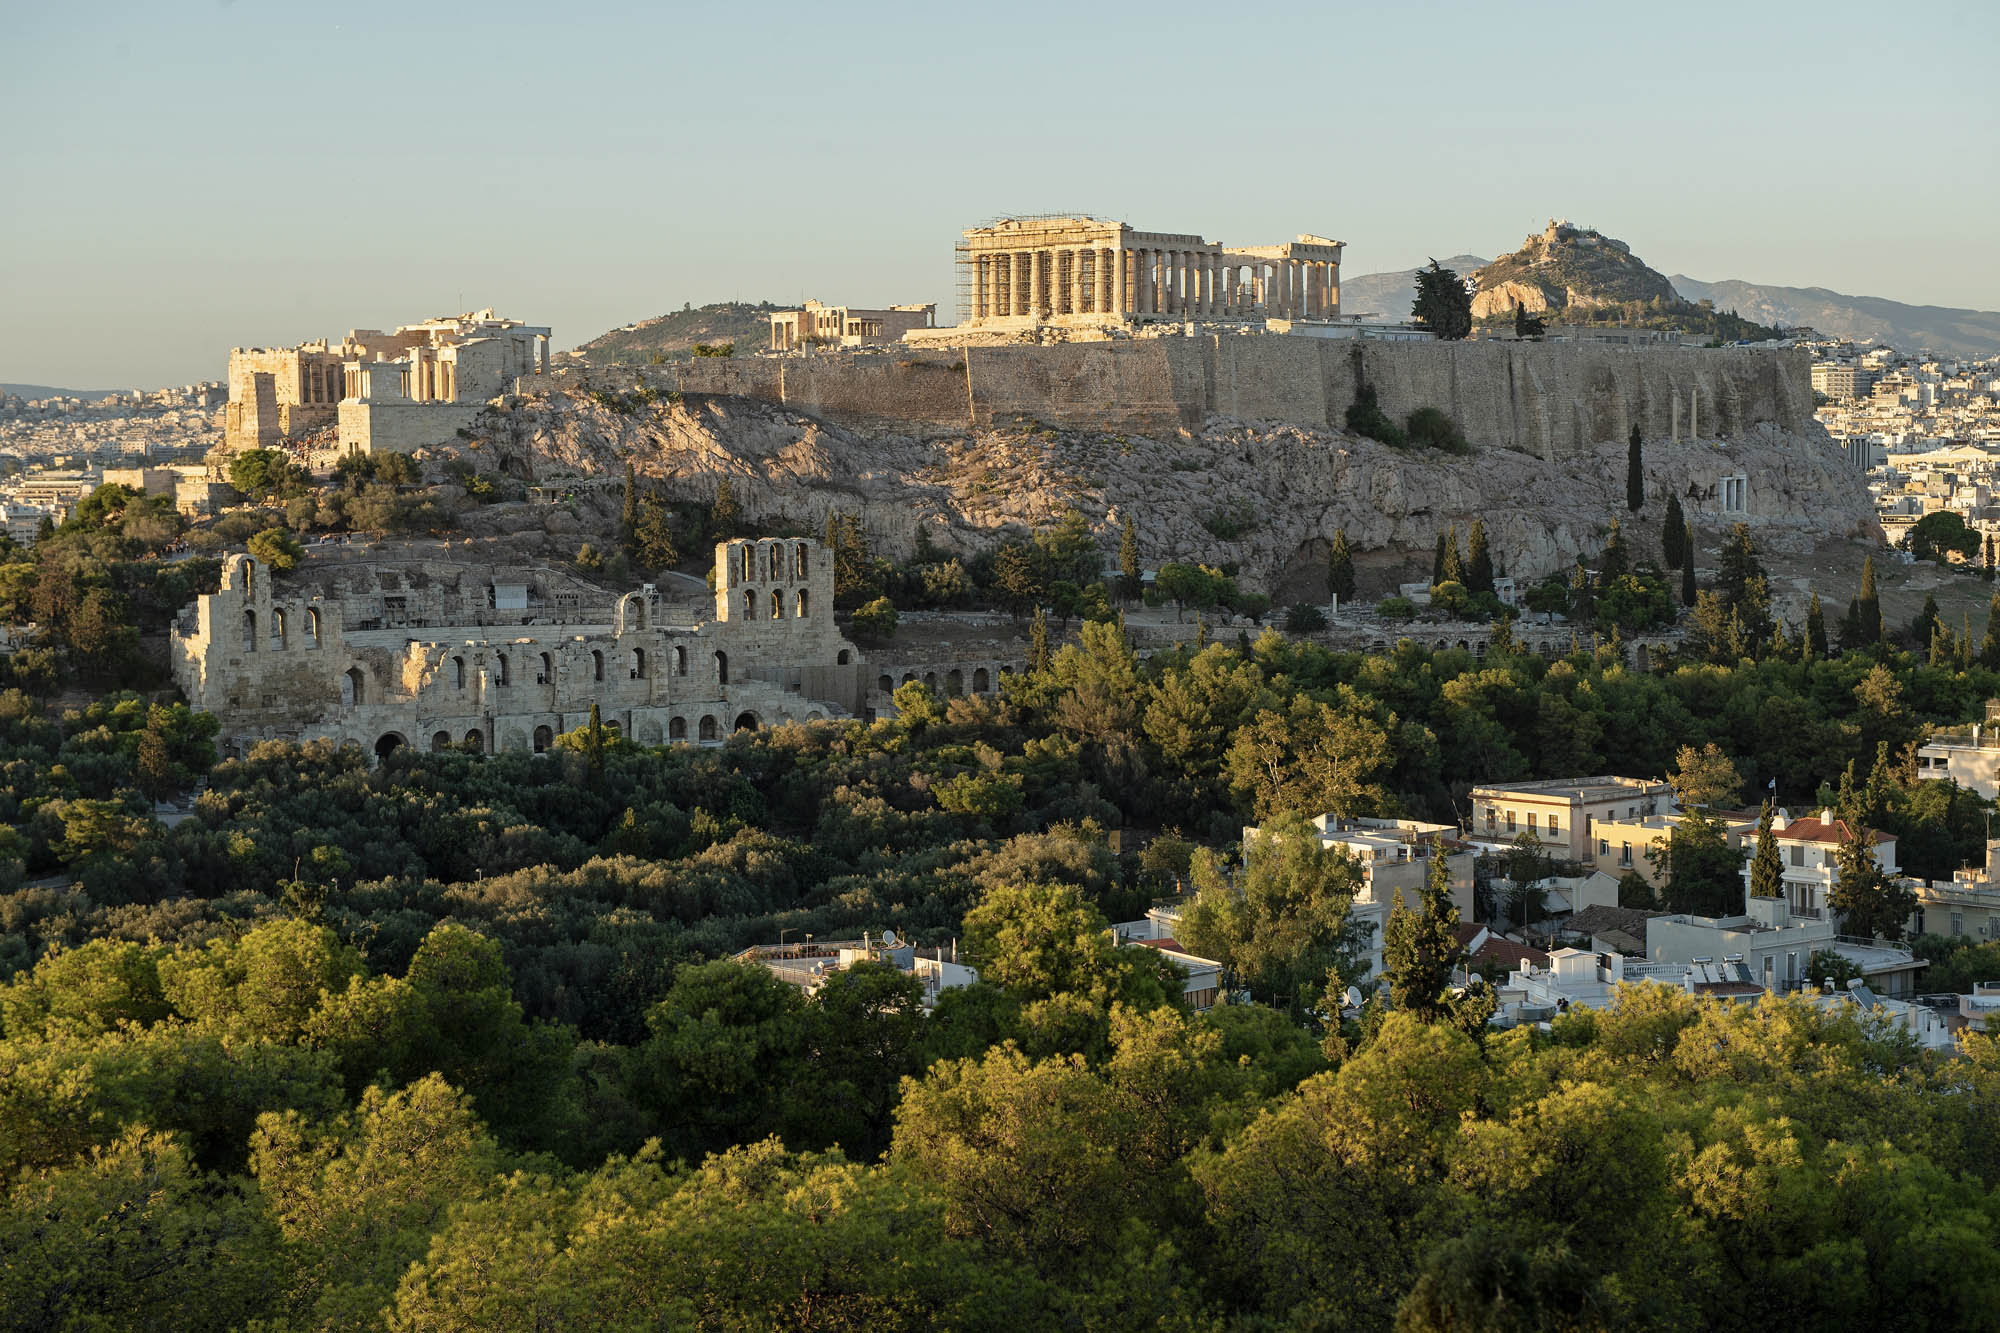 widok na wzgórze w atenach, akropol widziany z daleka i panorama miasta